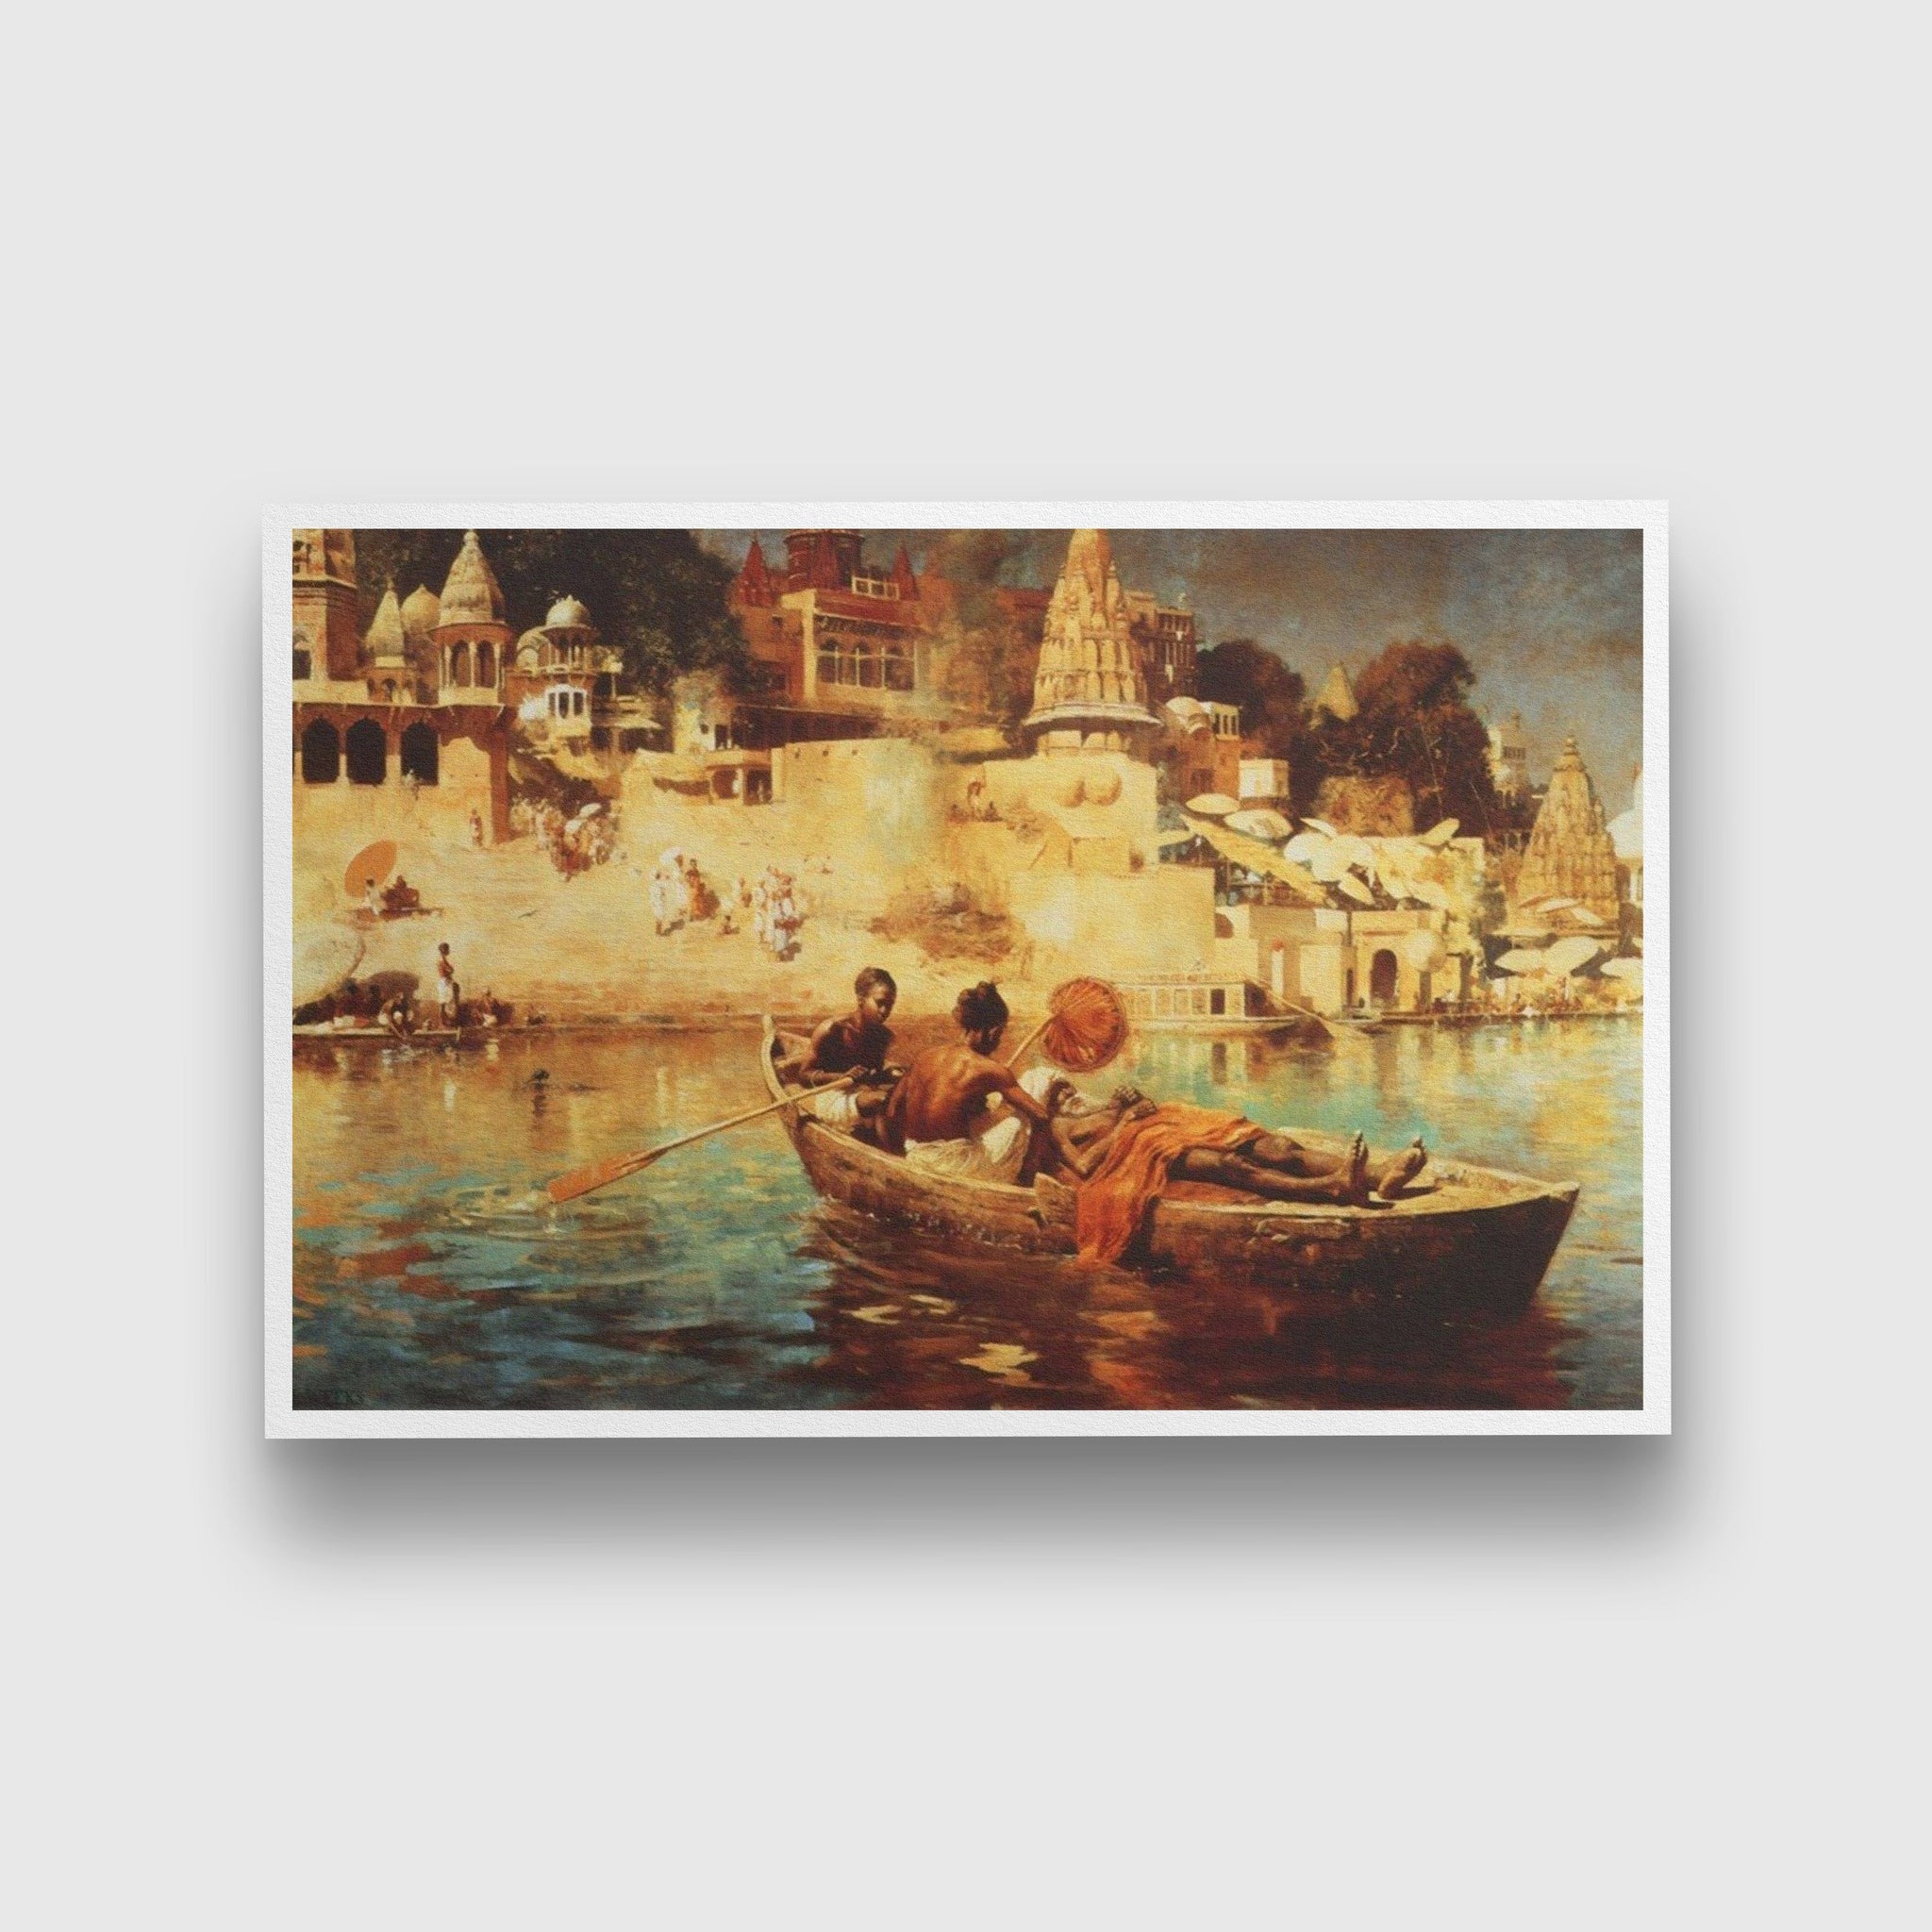 A Souvenir of the Ganges Painting - Meri Deewar - MeriDeewar